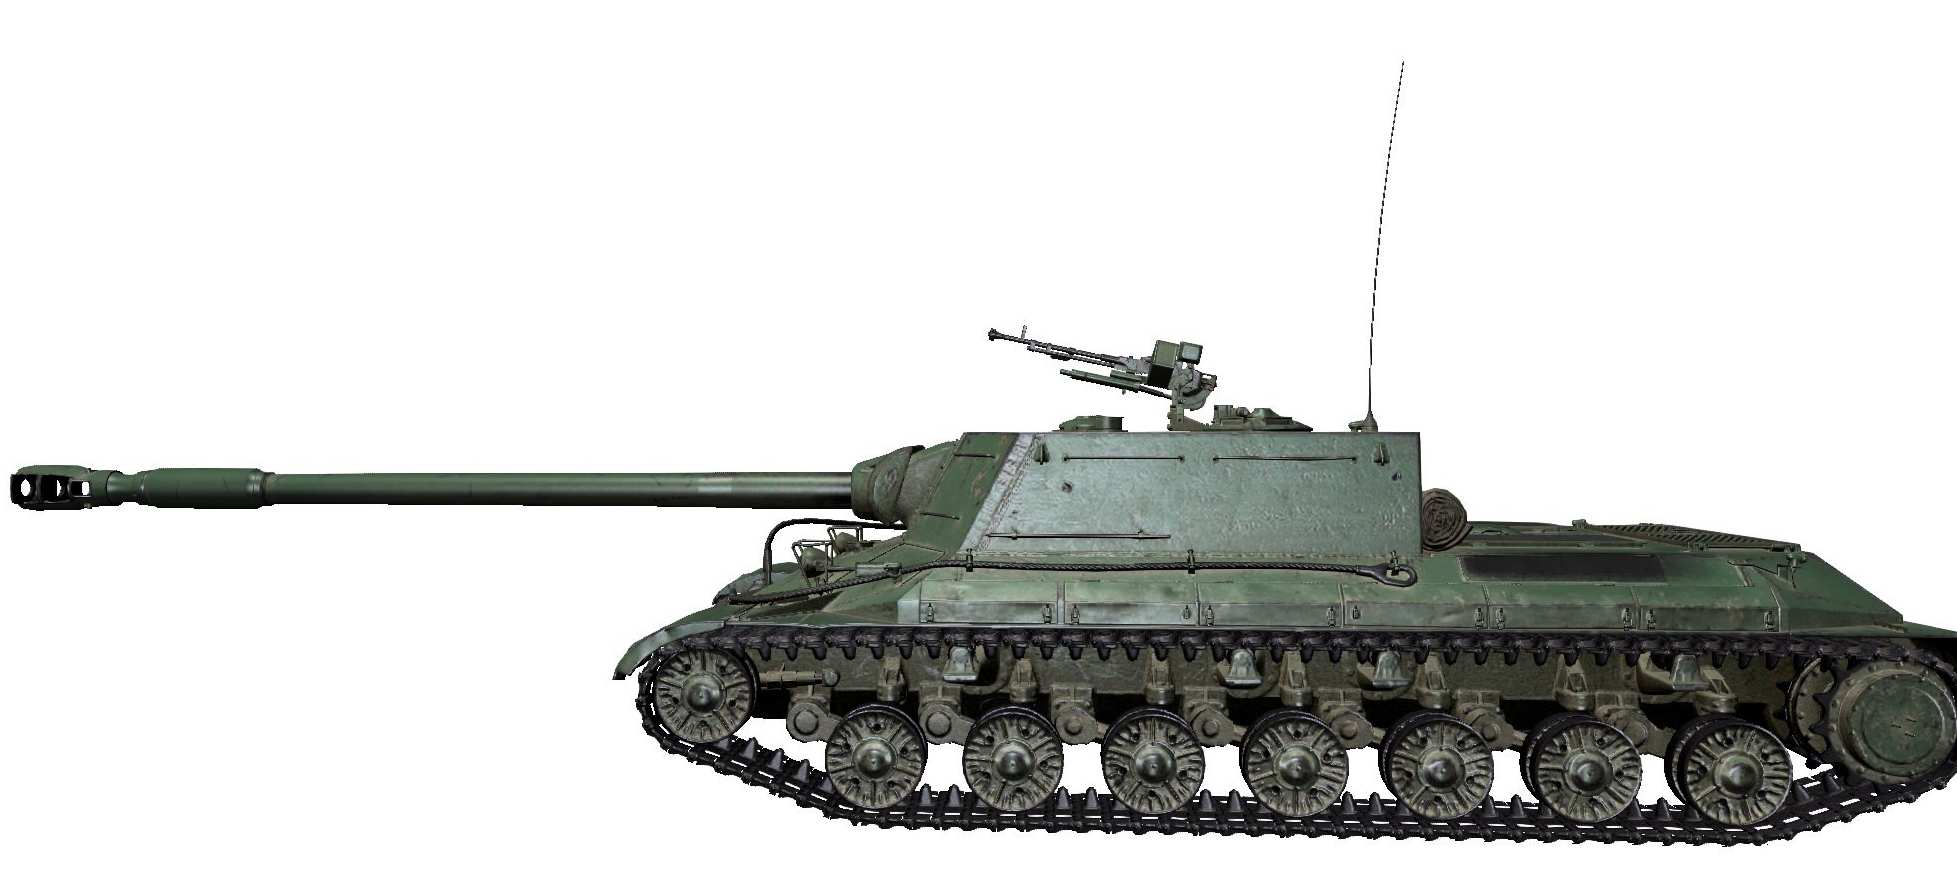 Бок ис. Танк WZ-111. Танк ИС 44 сбоку. ИС 4 вид сбоку. Танки из ворлд оф танк сбоку.